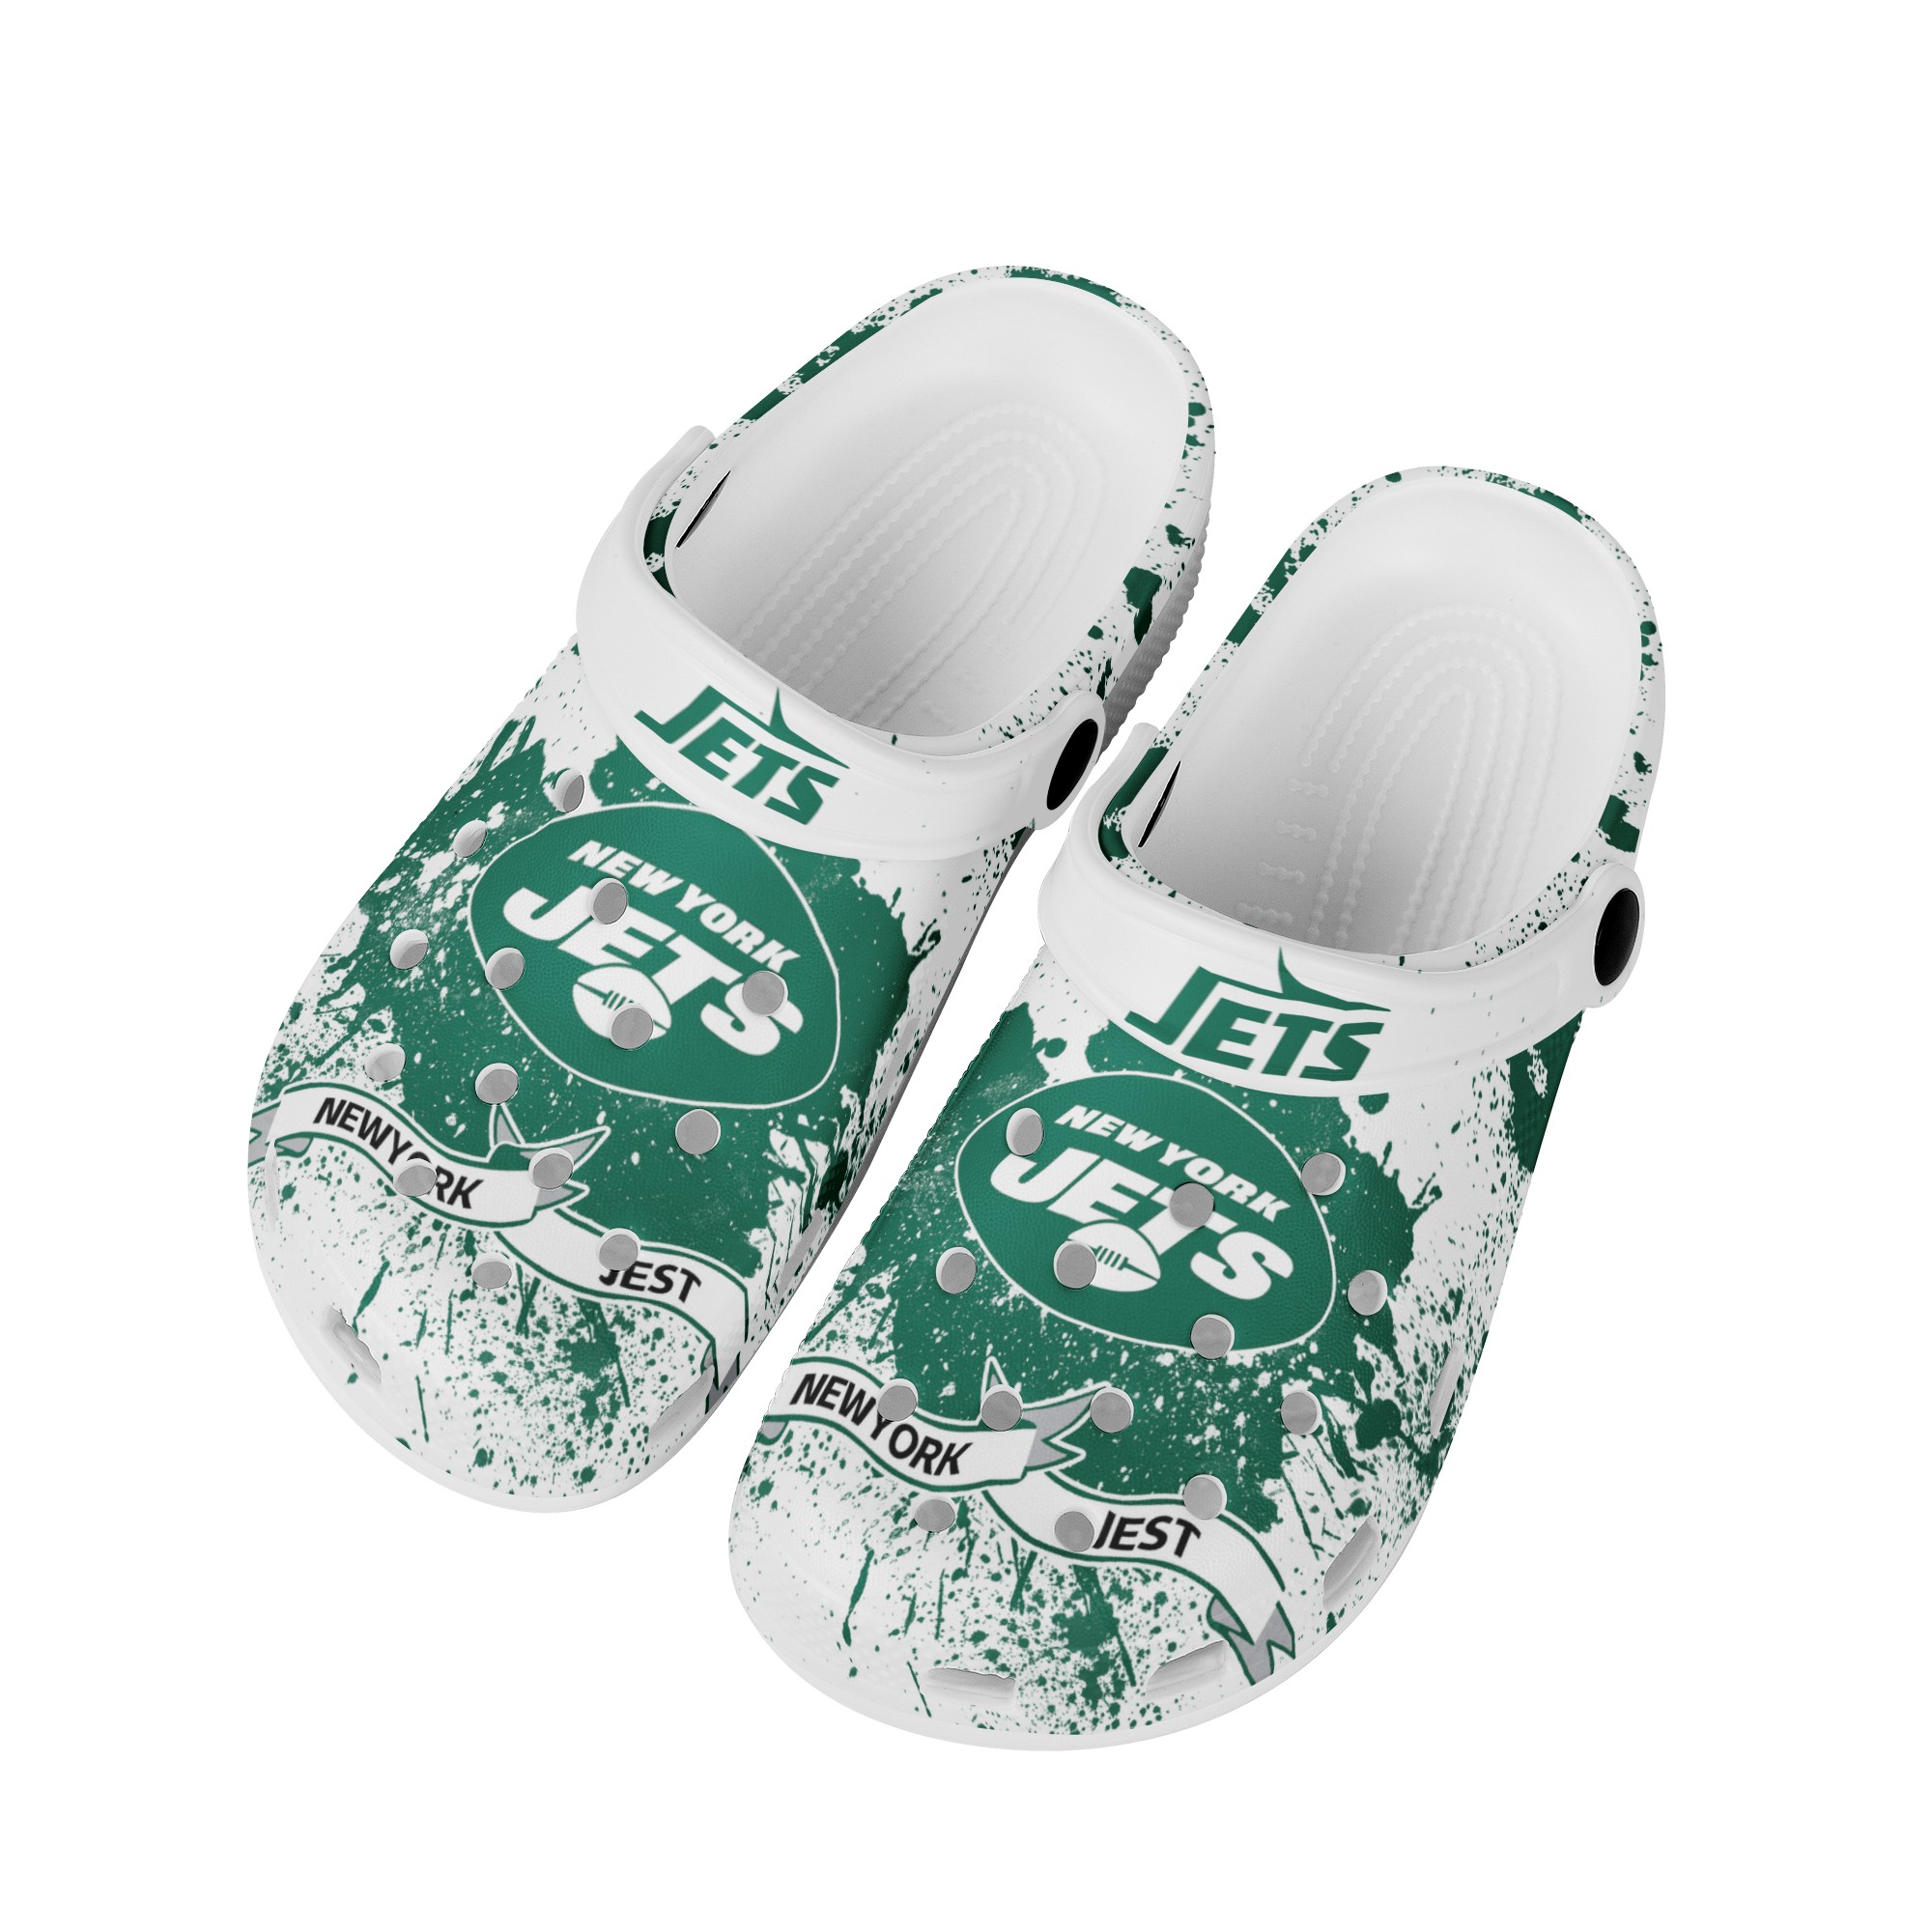 New York Jets Crocs Shoes cute Style#2 Shoes for fans -Jack sport shop